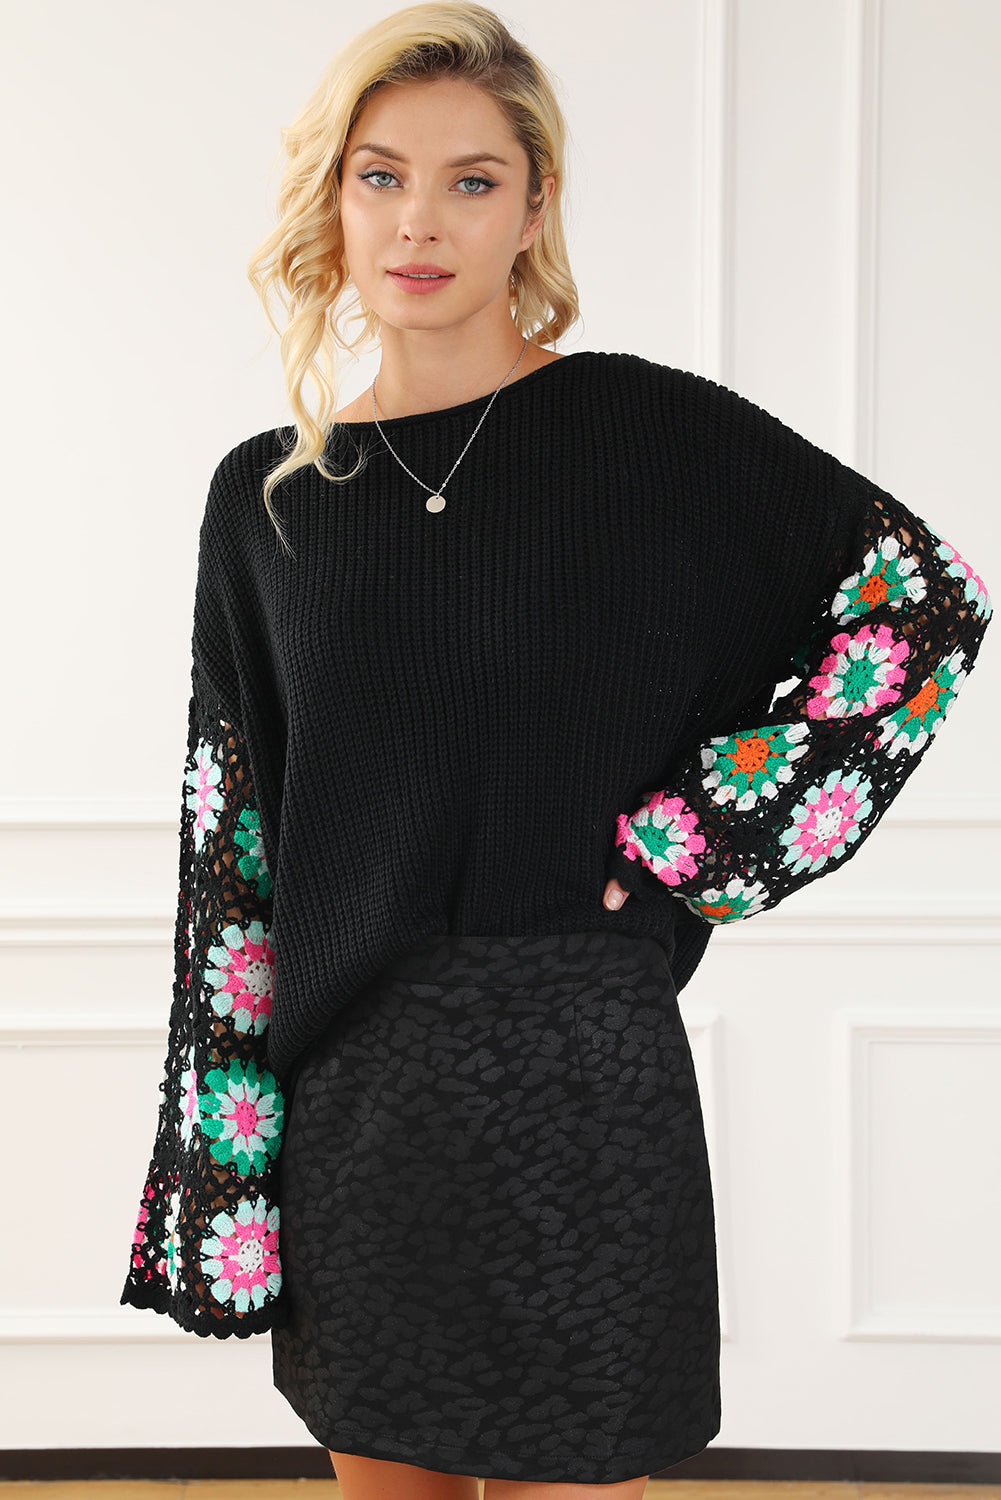 Crni cvjetni heklani široki pulover s zvonastim rukavima